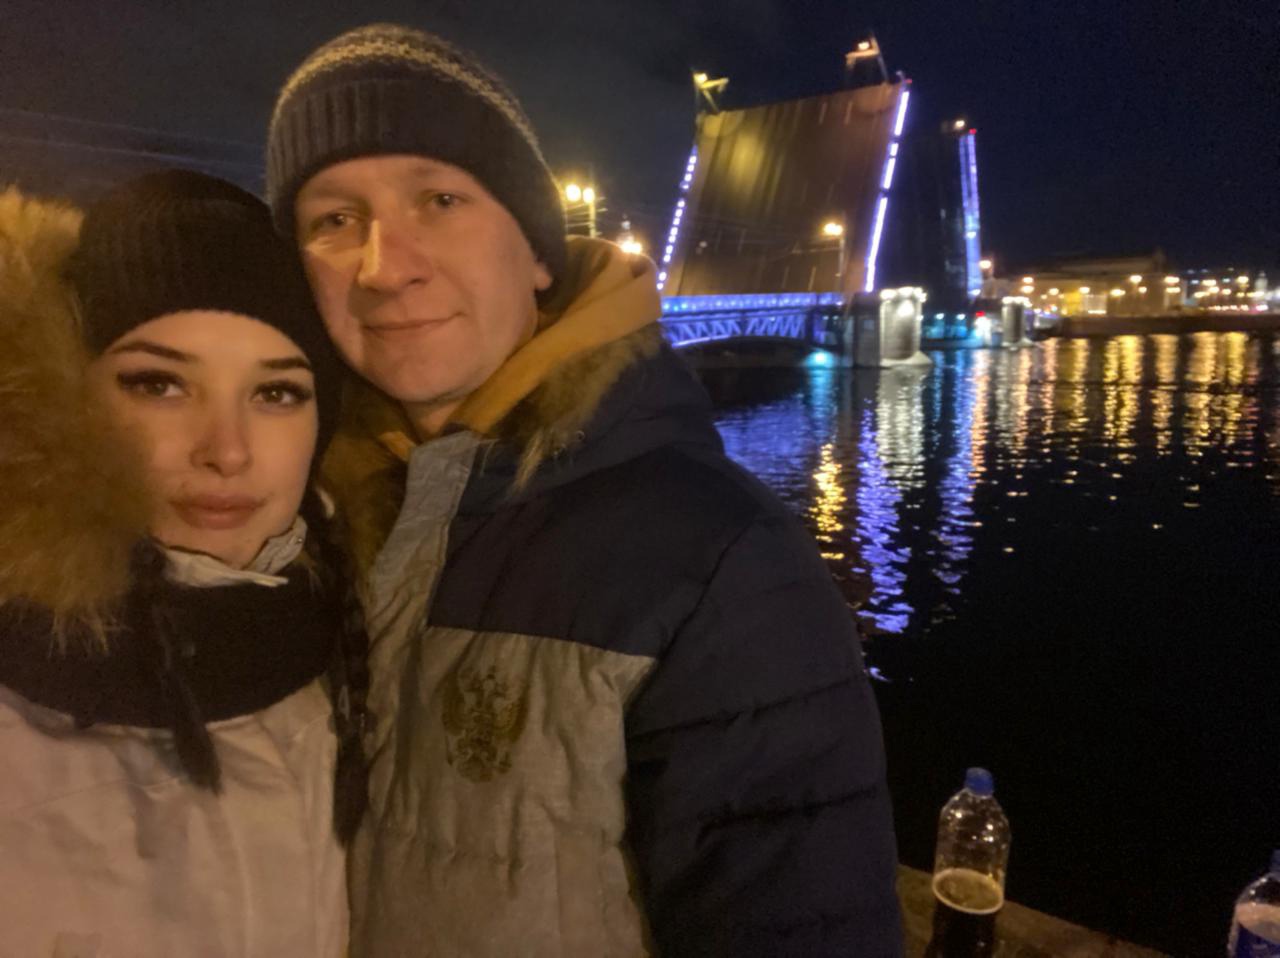 "Горжусь женой": отчаявшегося ярославца с моста сняла полицейская семья